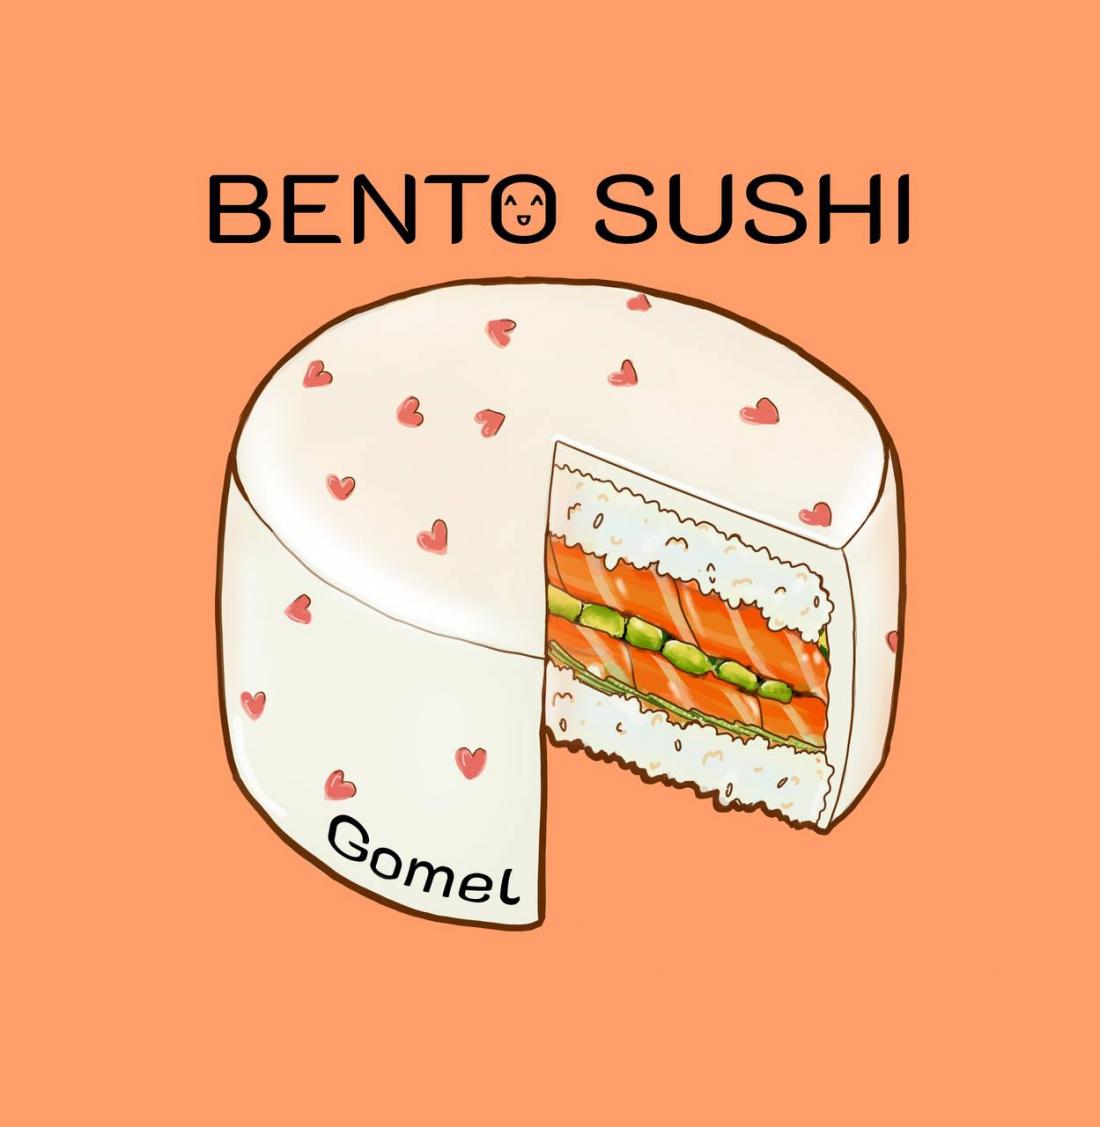 Бенто суши-торт за 31,50 р. от "Bento sushi" в Гомеле